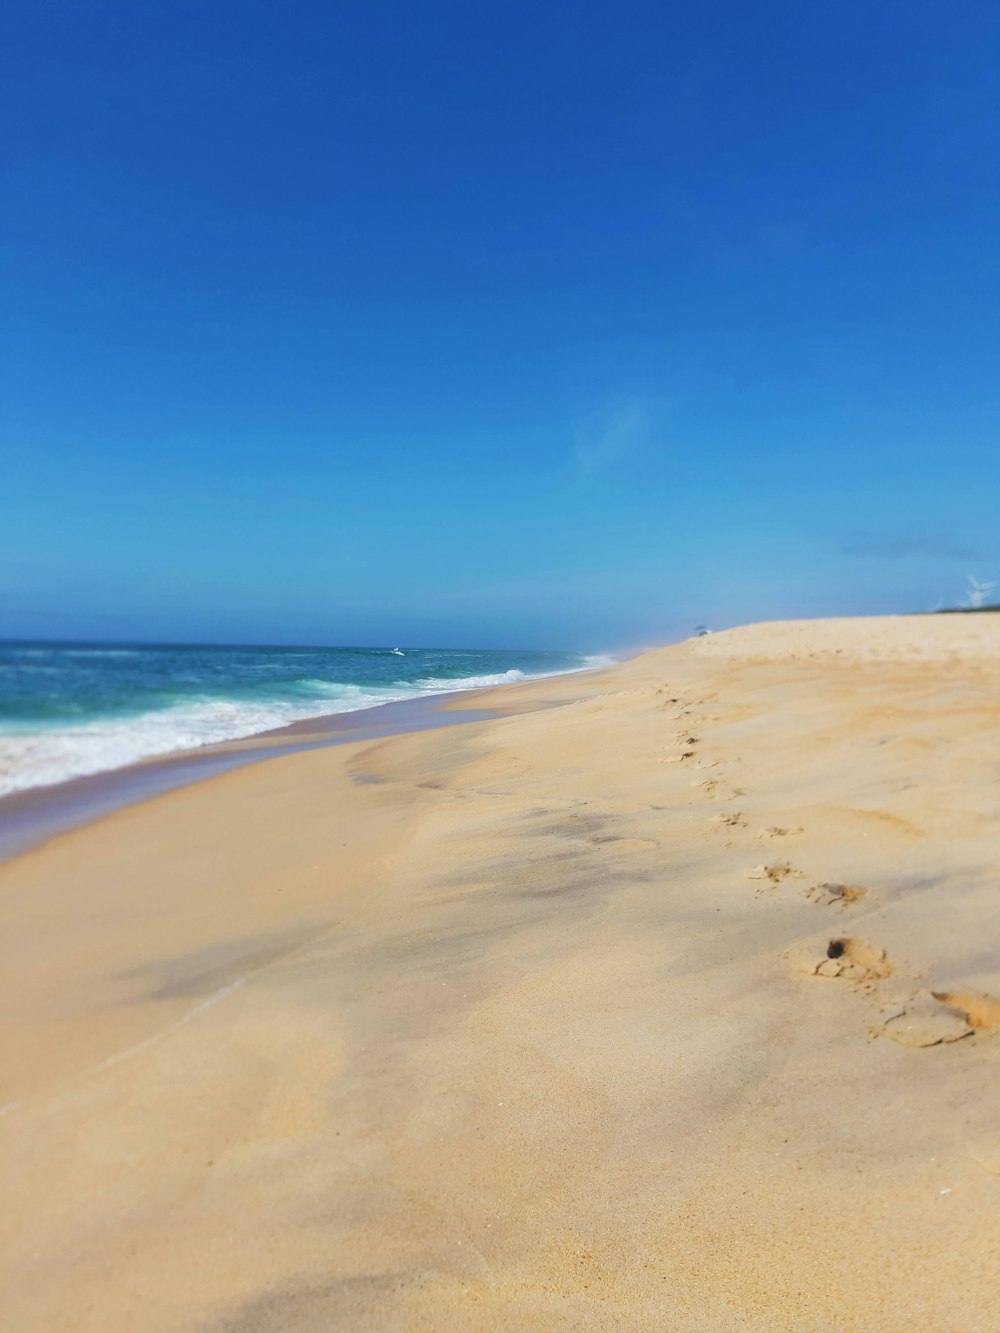 brown sand beach under blue sky during daytime